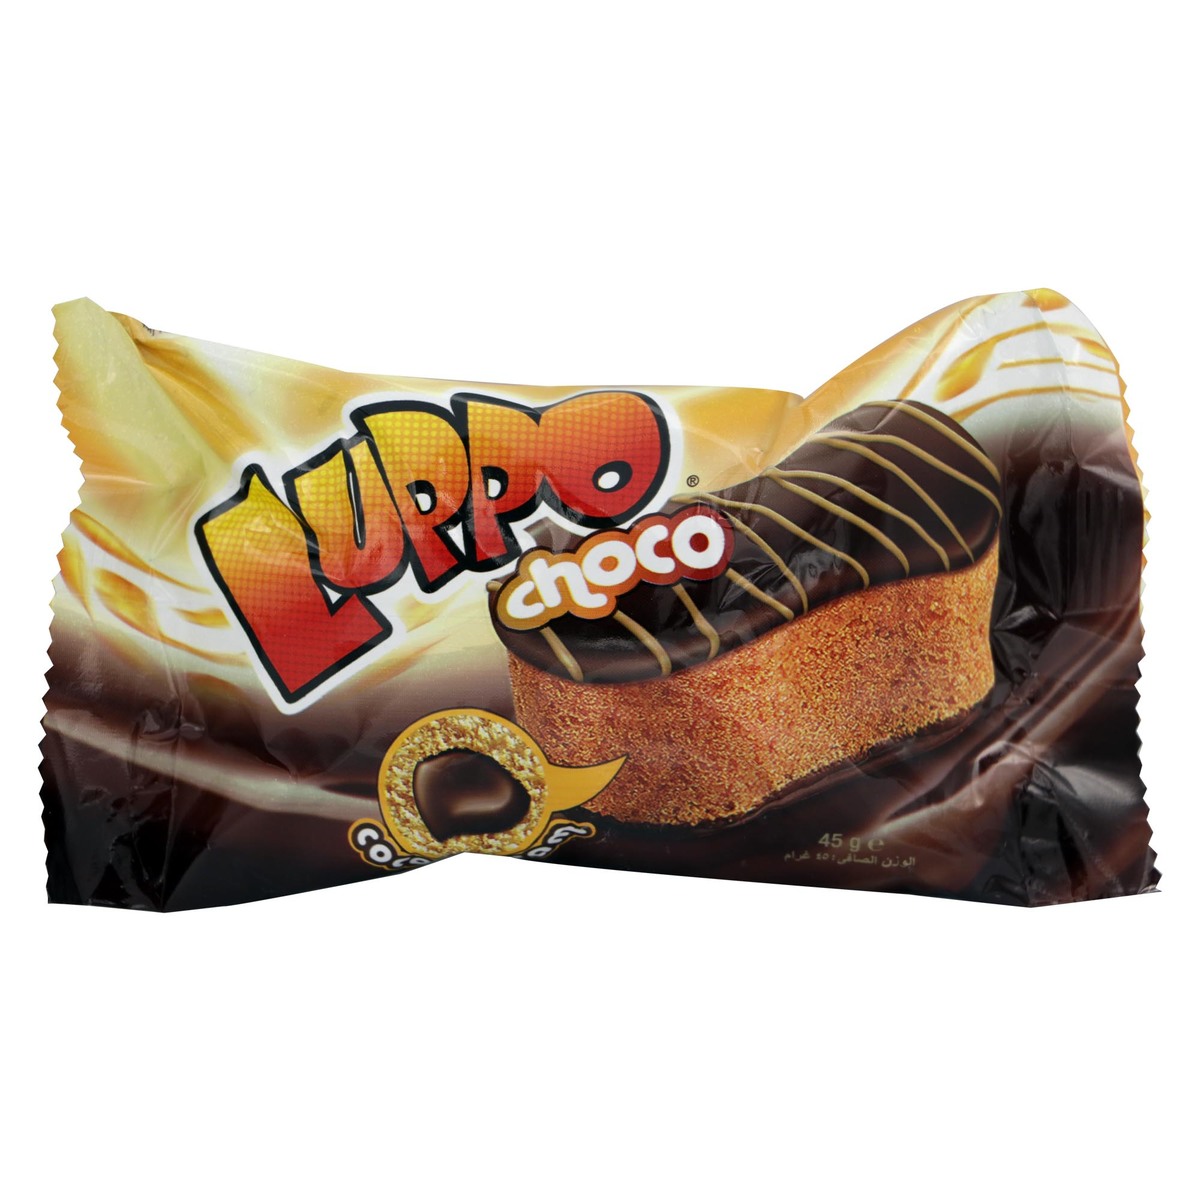 Solen-Luppo-Choco-Cocoa-Cream-Cake-24-x-45g-624923-01